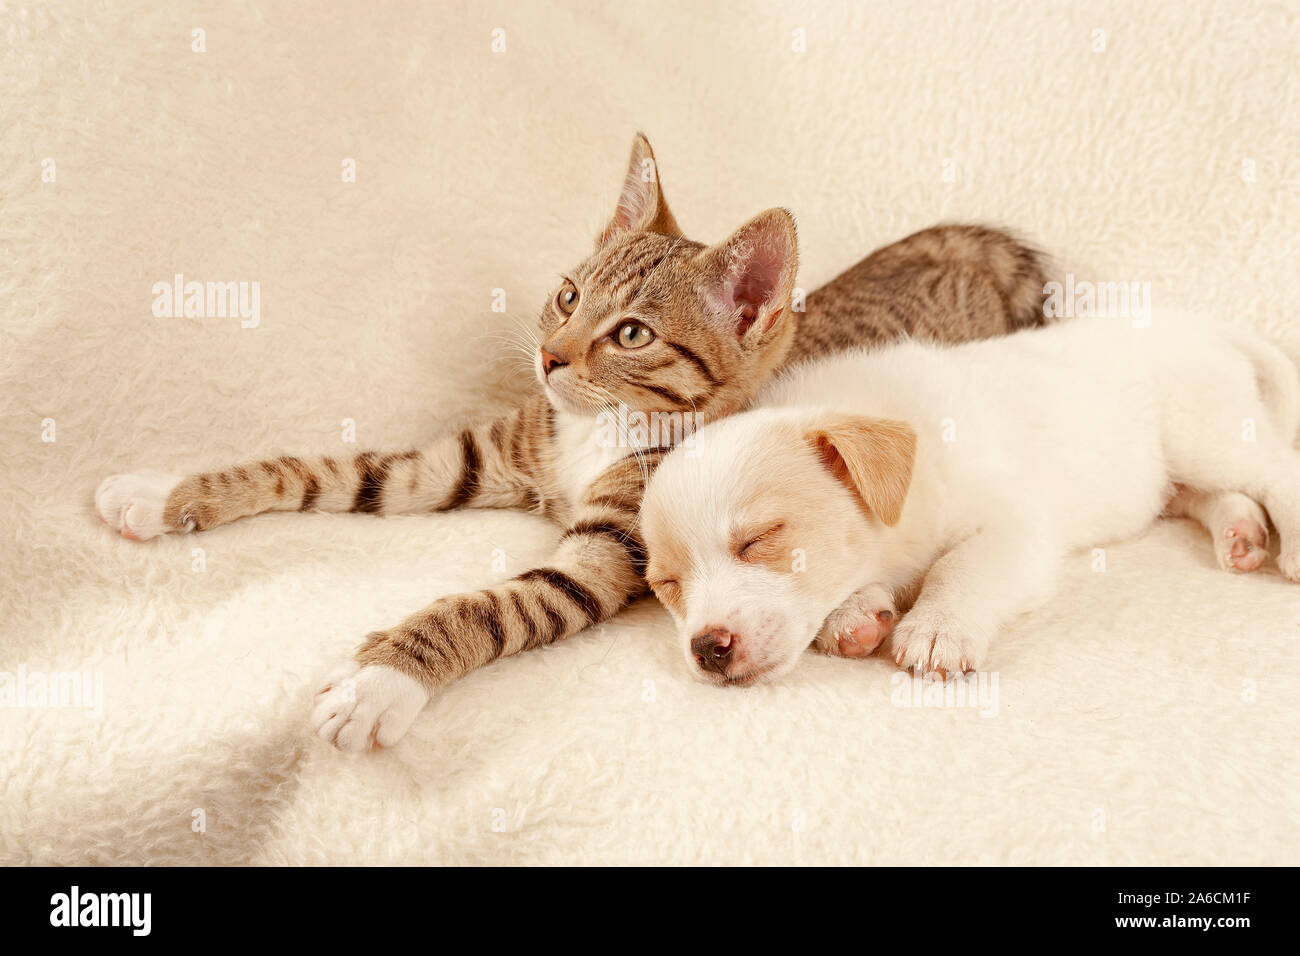 Junges Kätzchen und junger Hund liegen nebeneinander friedlich | Ritratto di un gattino e un giovane cucciolo pacificamente sdraiati accanto a ogni altro. Foto Stock